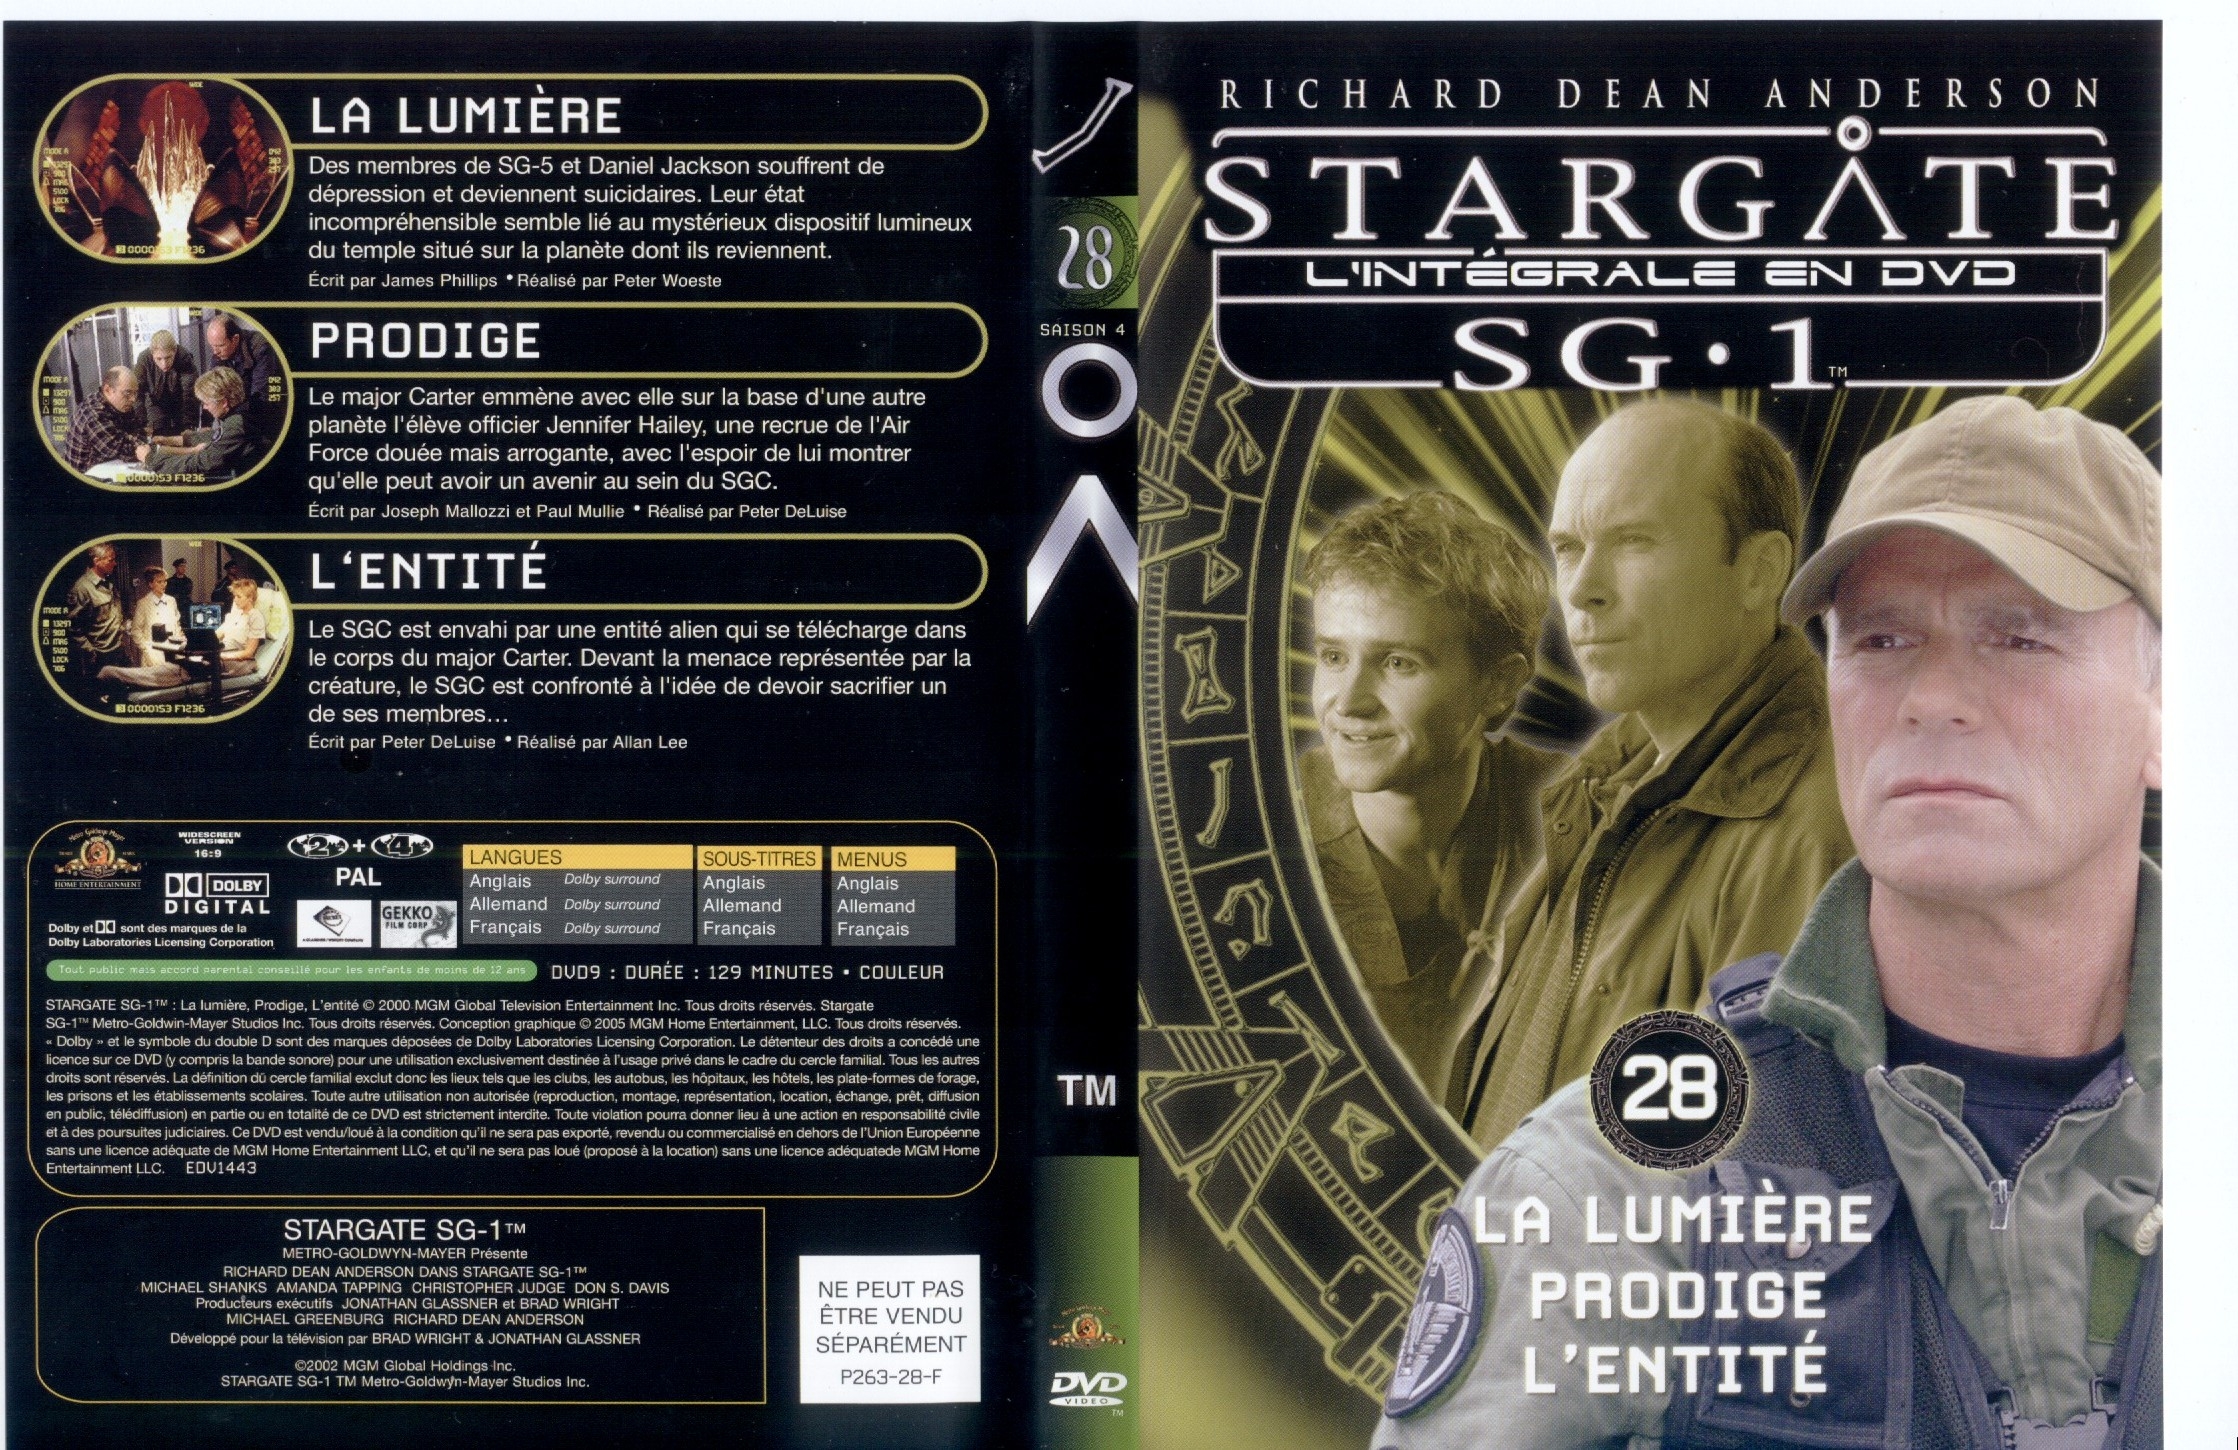 Jaquette DVD Stargate saison 4 vol 28